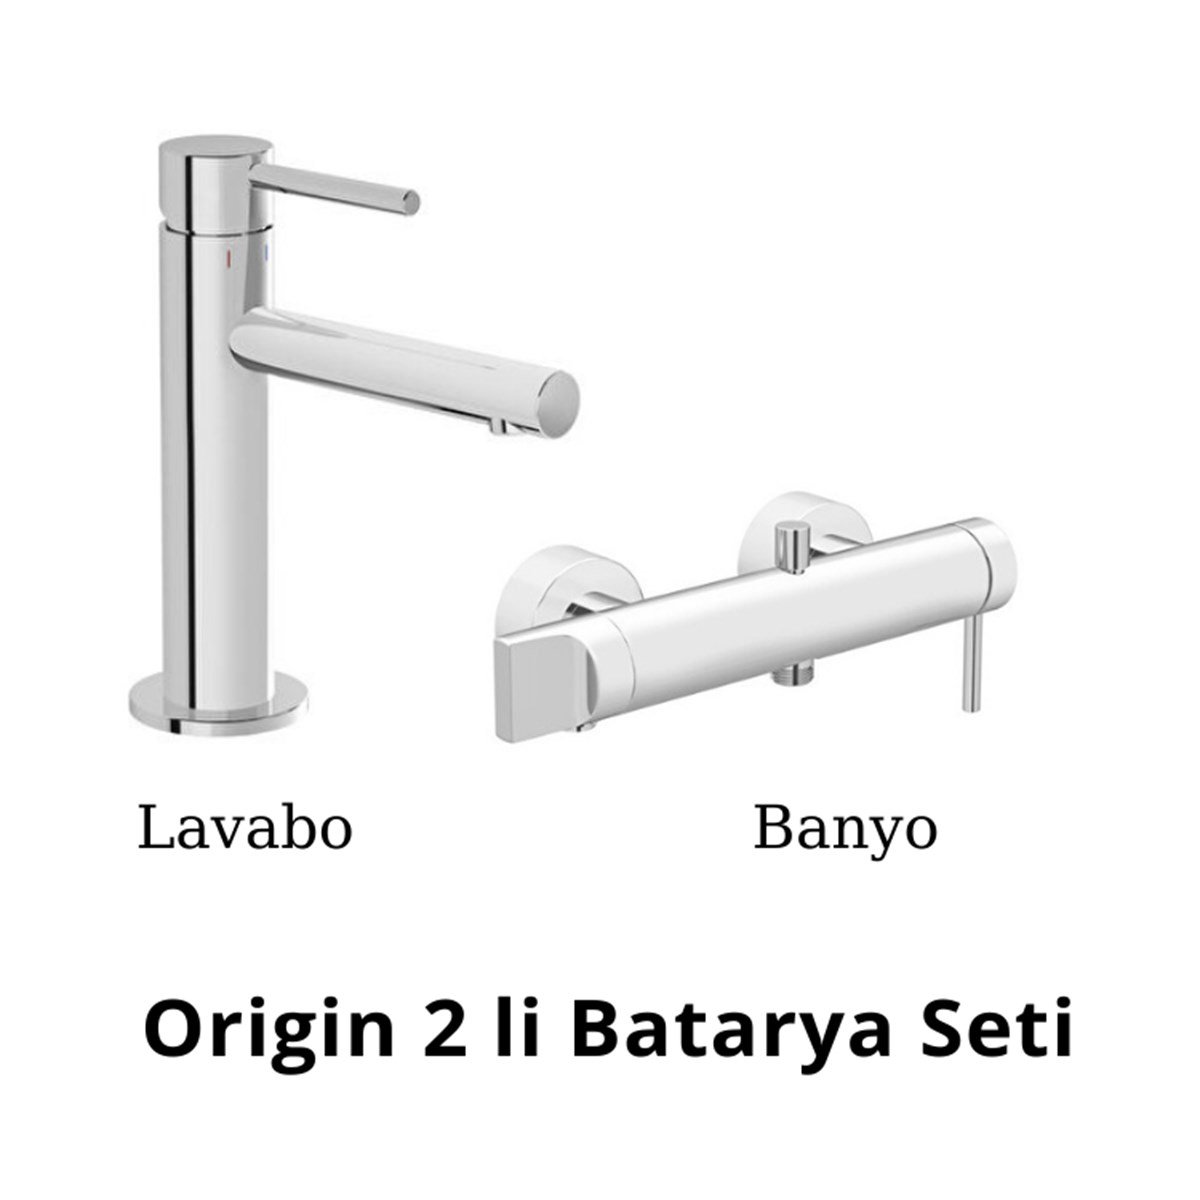 Artema Origin 2 li Batarya Seti (Lavabo+Banyo);ürünü yüksel kalite  standartlarında üretilmiştir.Özgün tasarımın Türk işçiliğiyle birleştiği  elit tercih.